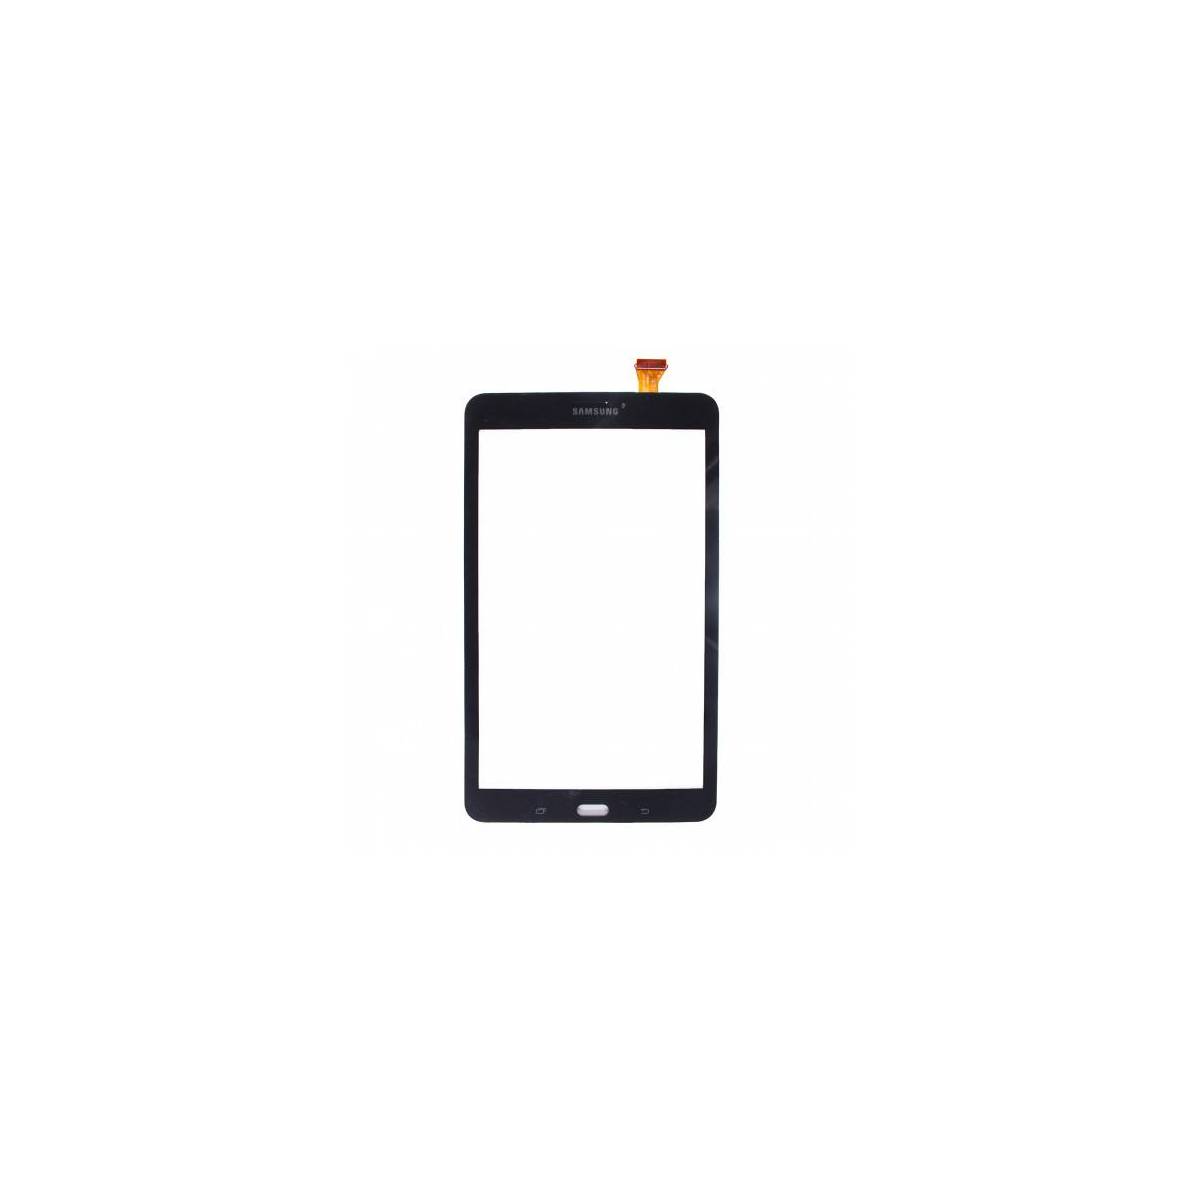 Vitre tactile Noire Galaxy Tab E - 8.0 - T375/T377